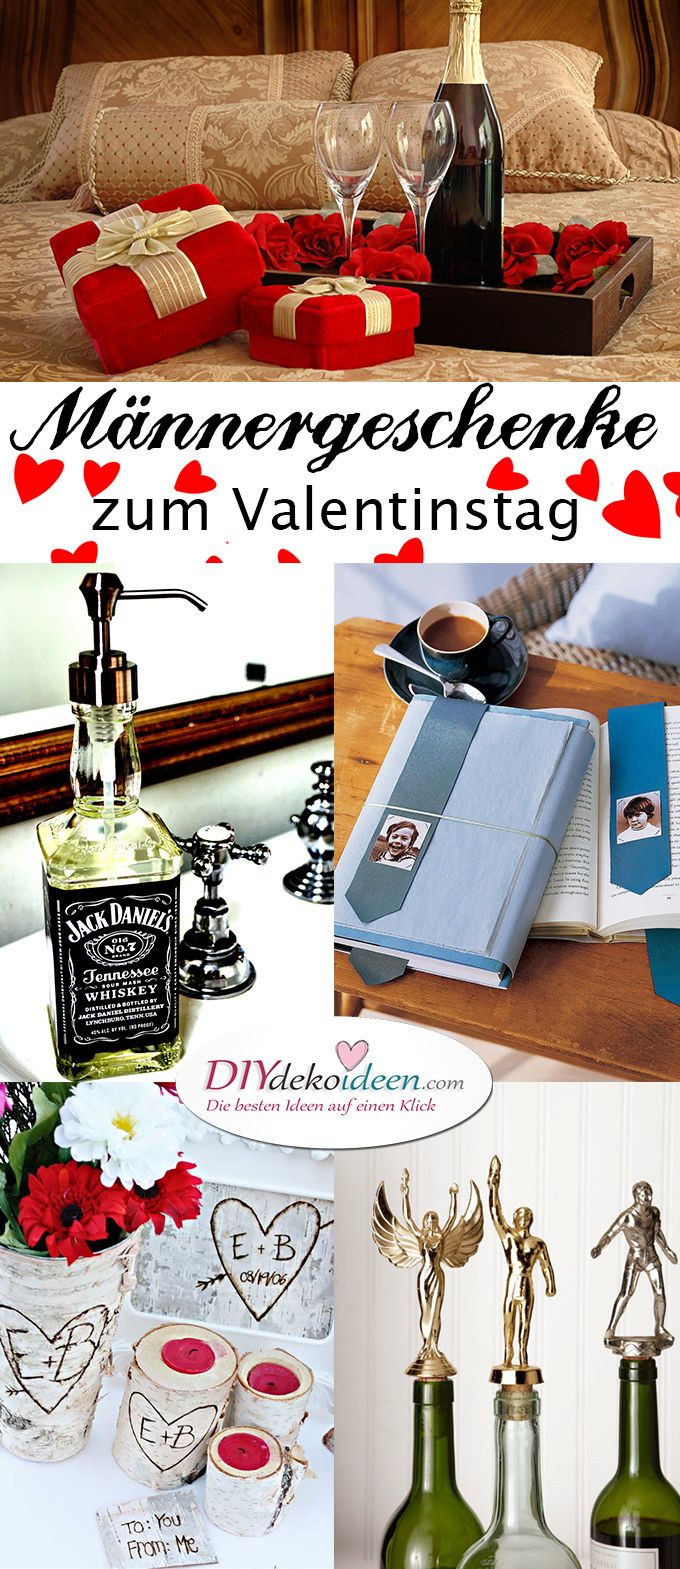 Diy Freund
 Männergeschenke zum Valentinstag DIY Bastelideen